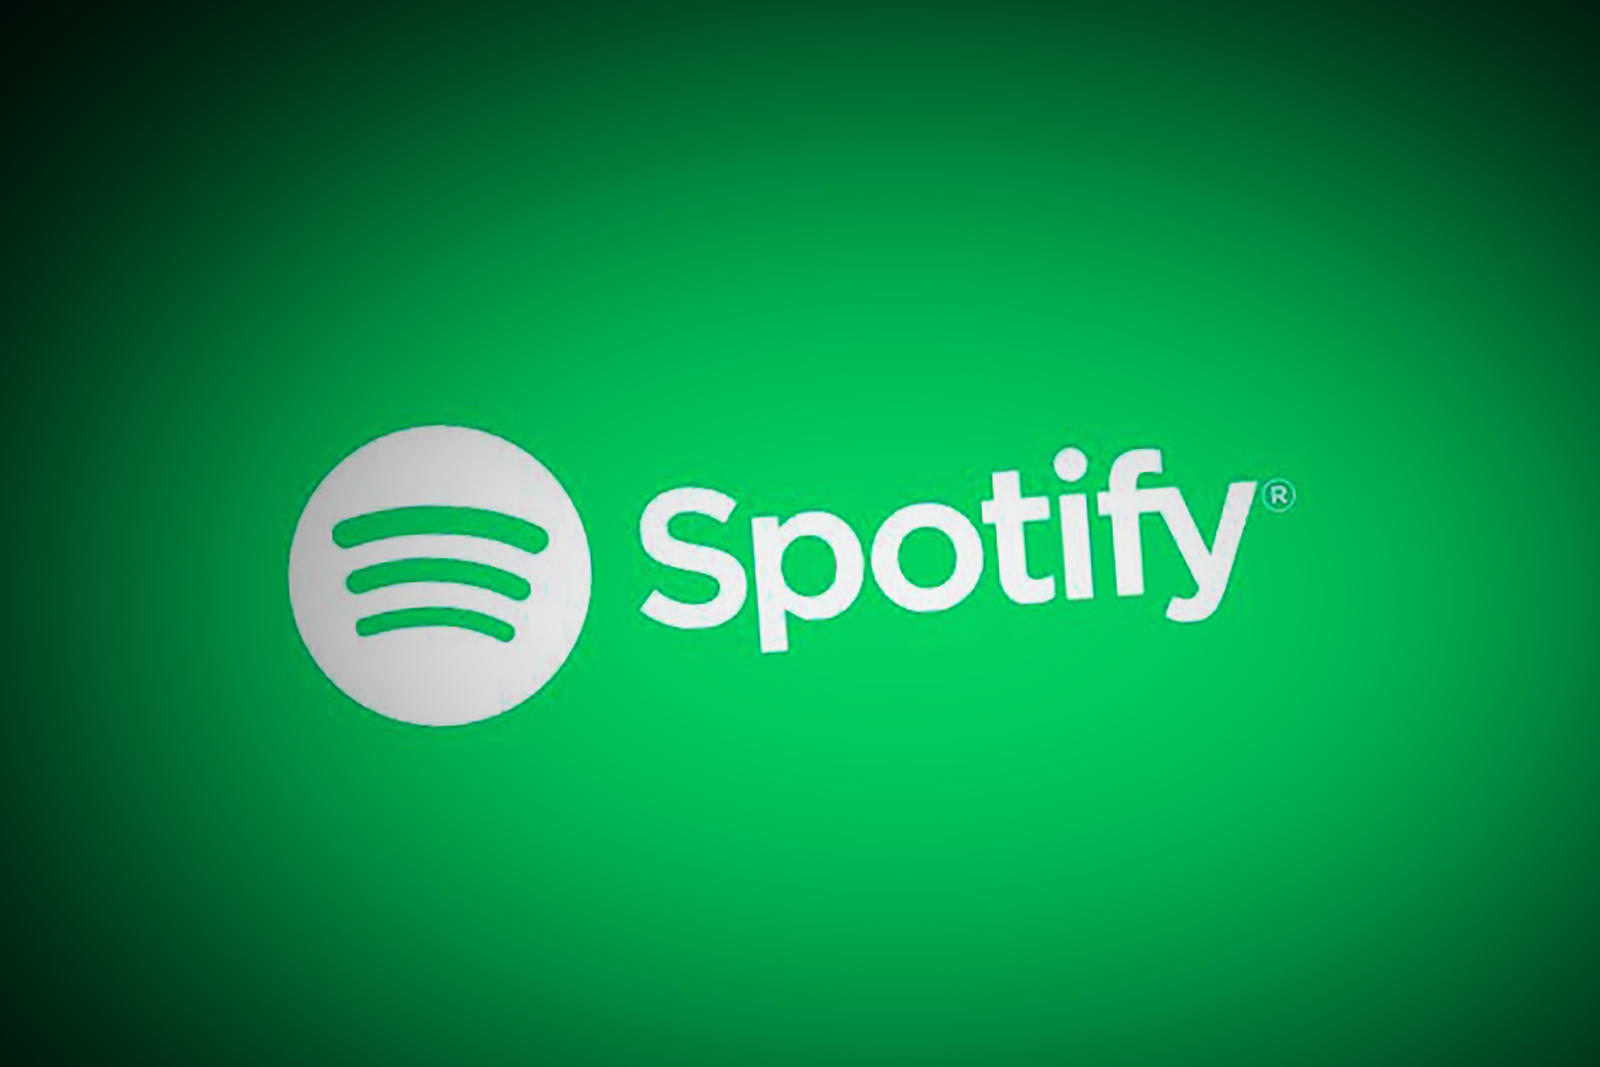 Kini kamu bisa menikmati Spotify Premium gratis selama 3 bulan